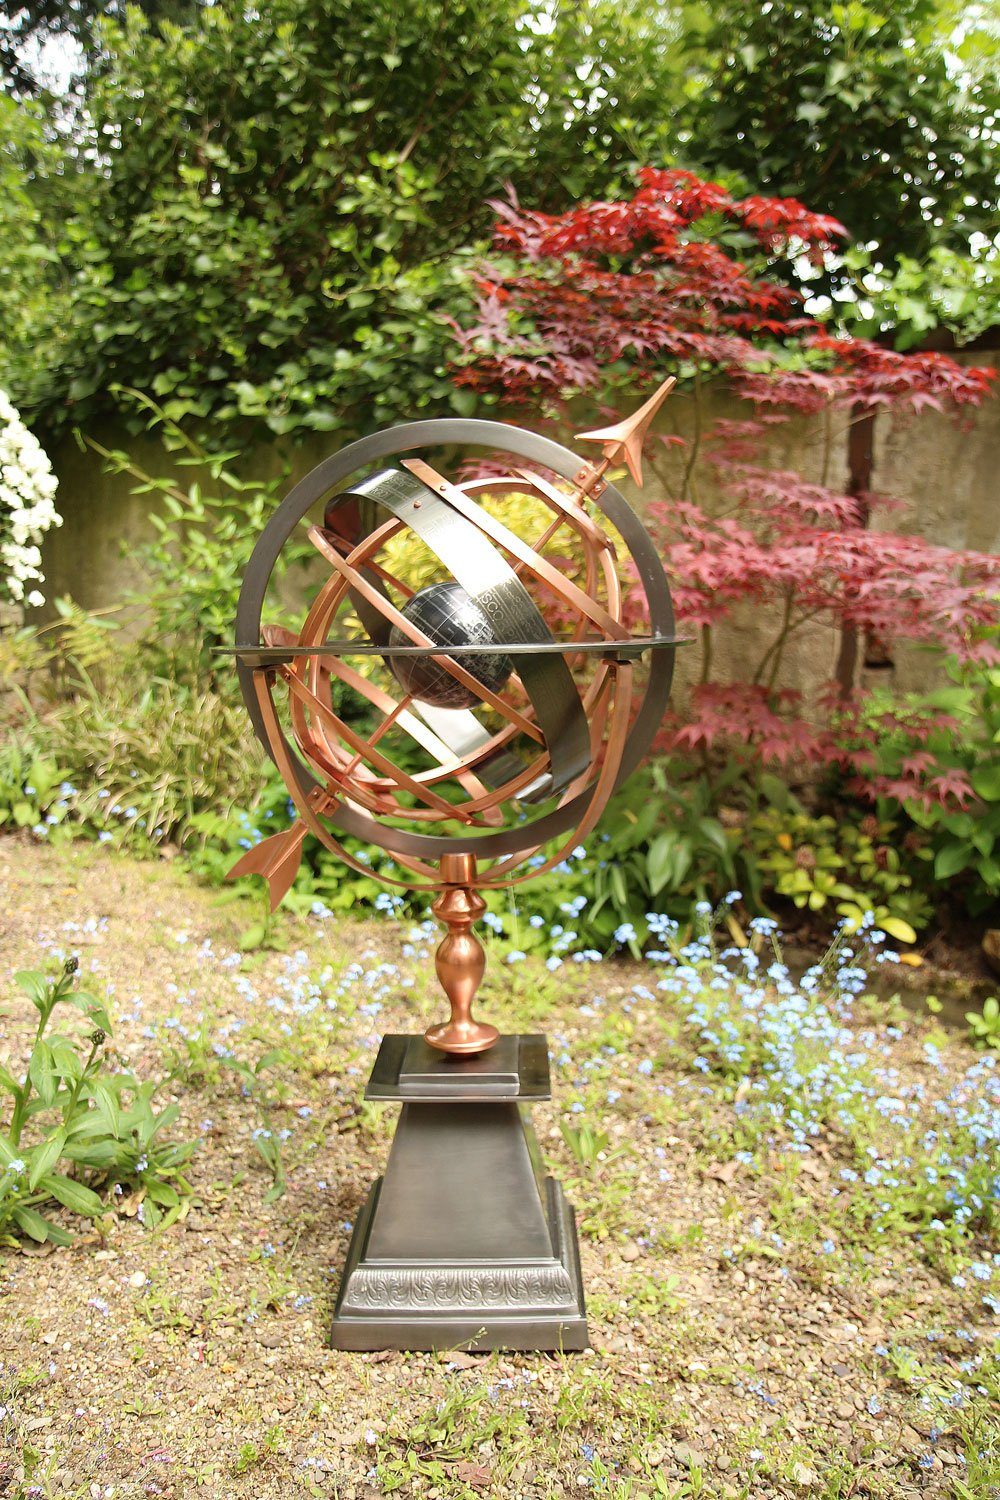 Aubaho Gartenfigur Sonnenuhr Eisen Kupfer Dekoration Antik-Stil Garten 93cm Weltkugel